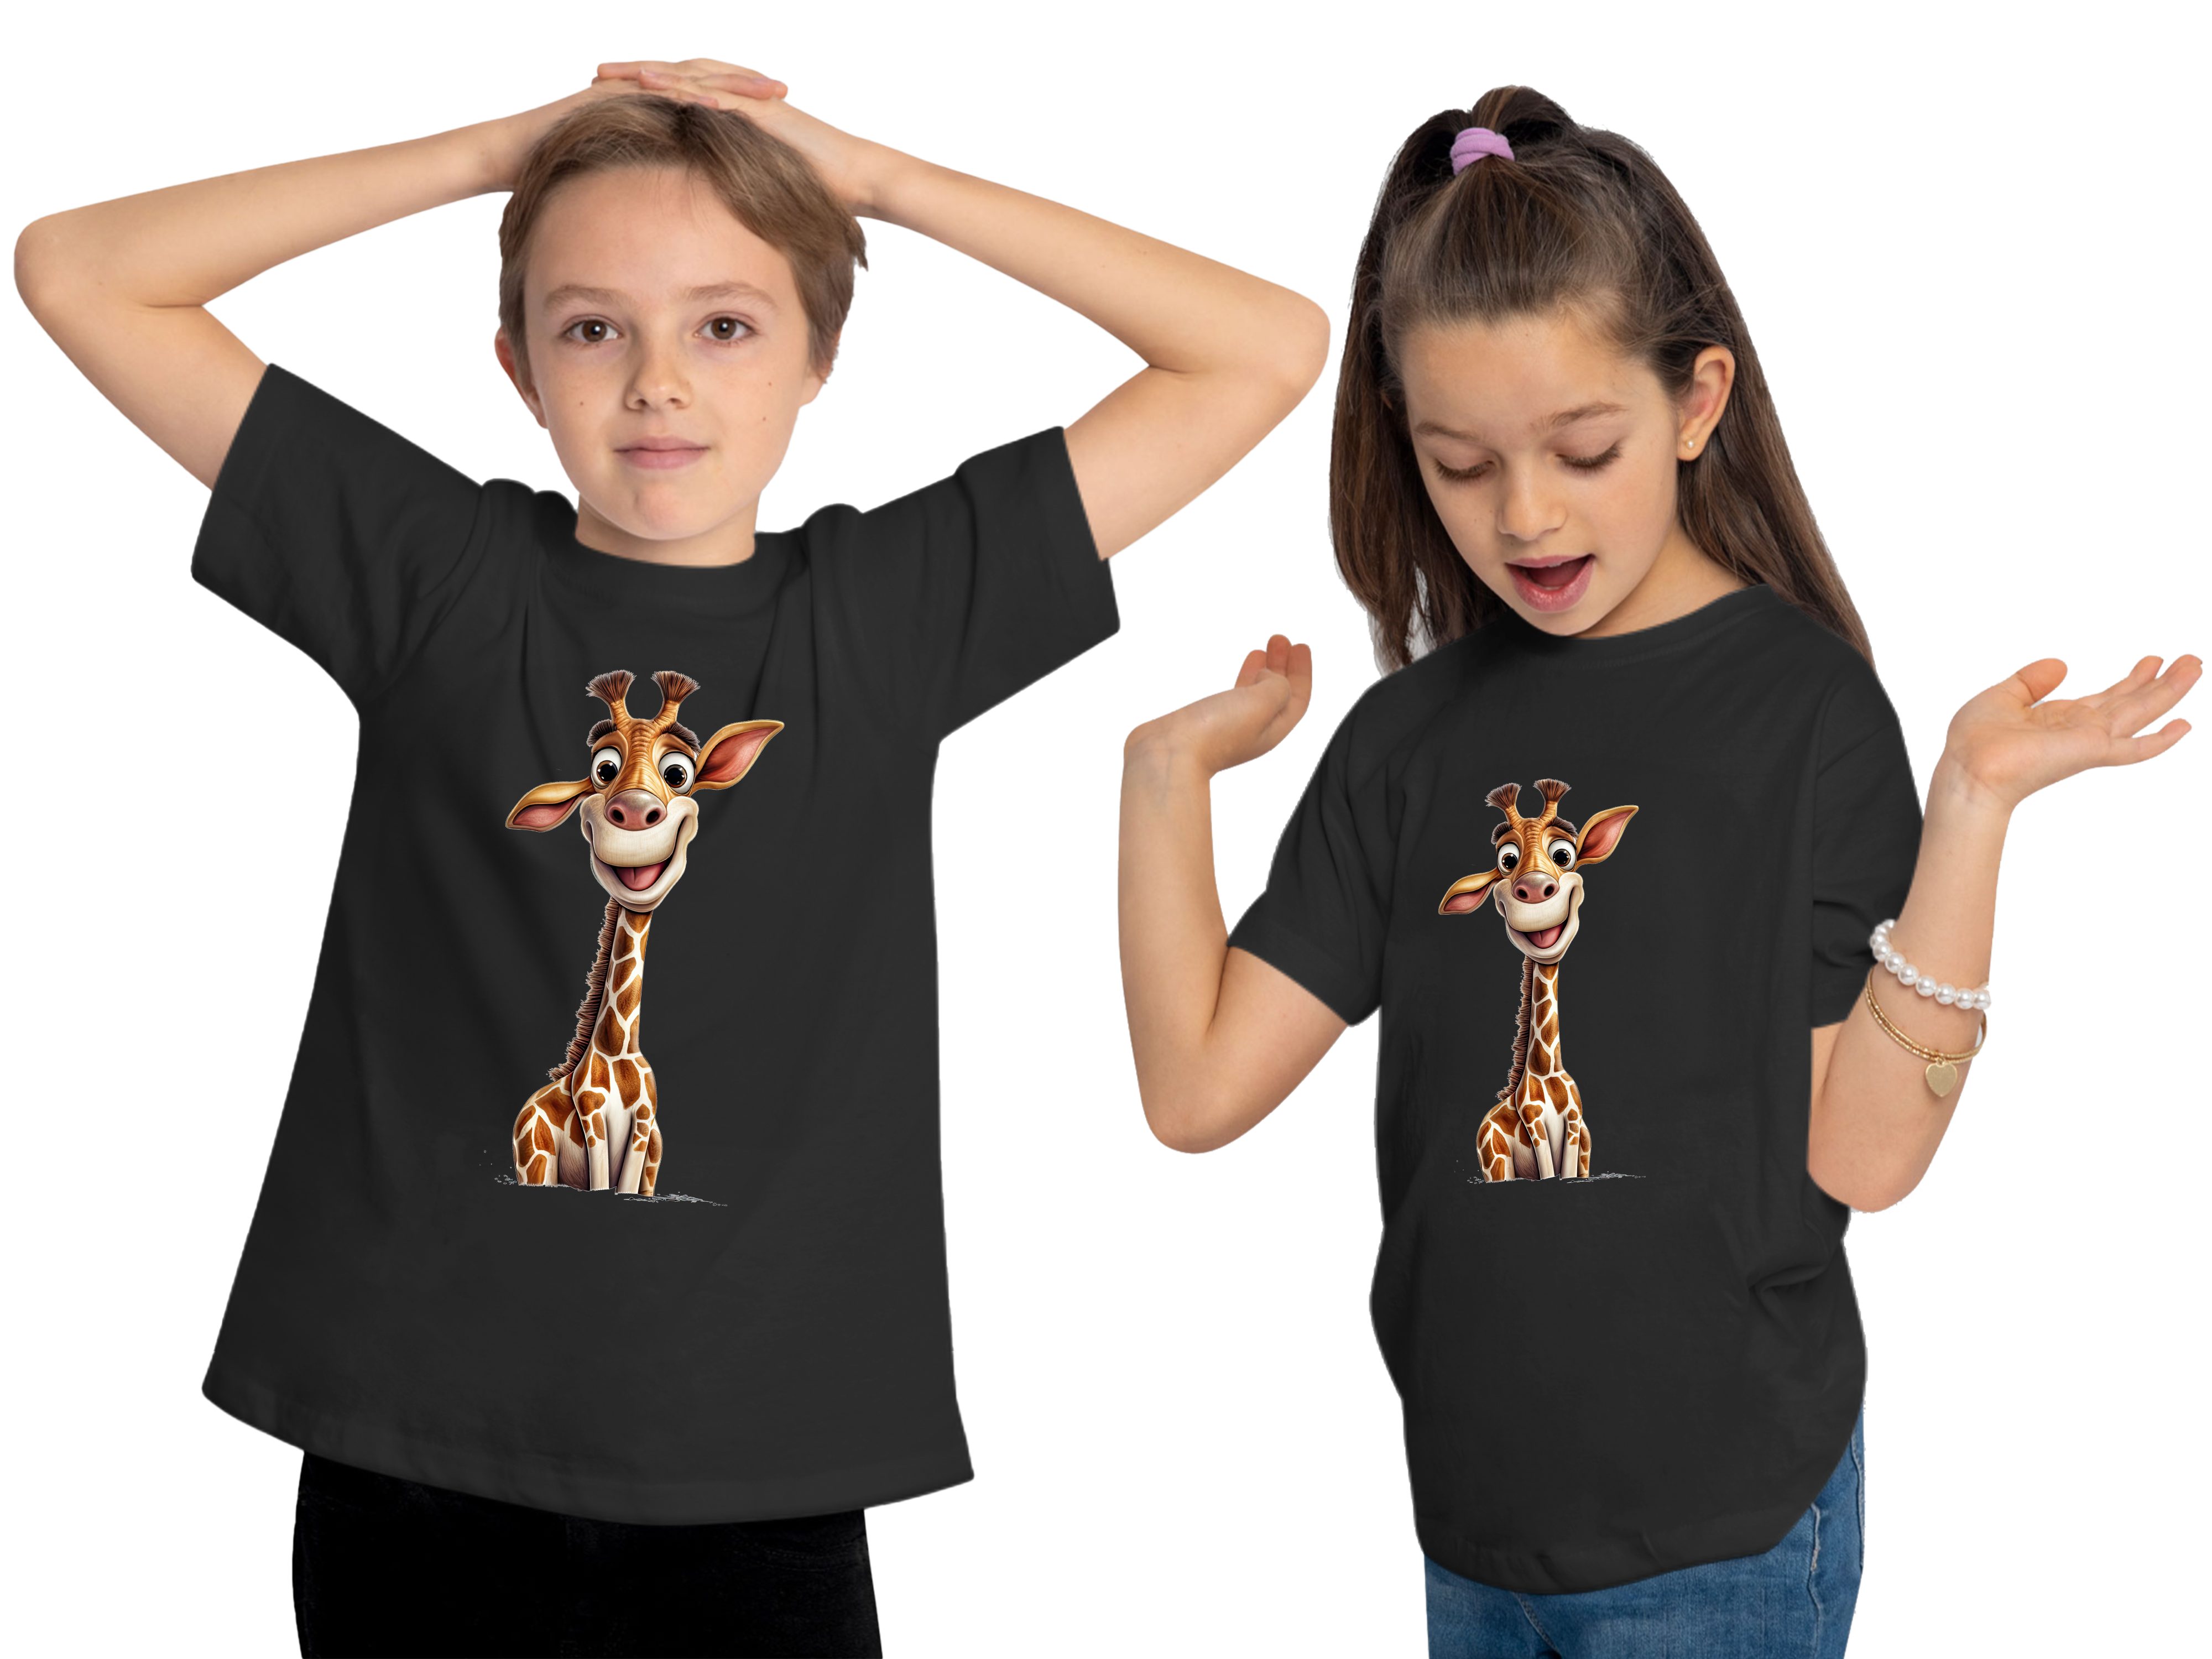 MyDesign24 T-Shirt Shirt Baby i273 Giraffe Aufdruck, bedruckt Wildtier - Print Baumwollshirt Kinder schwarz mit